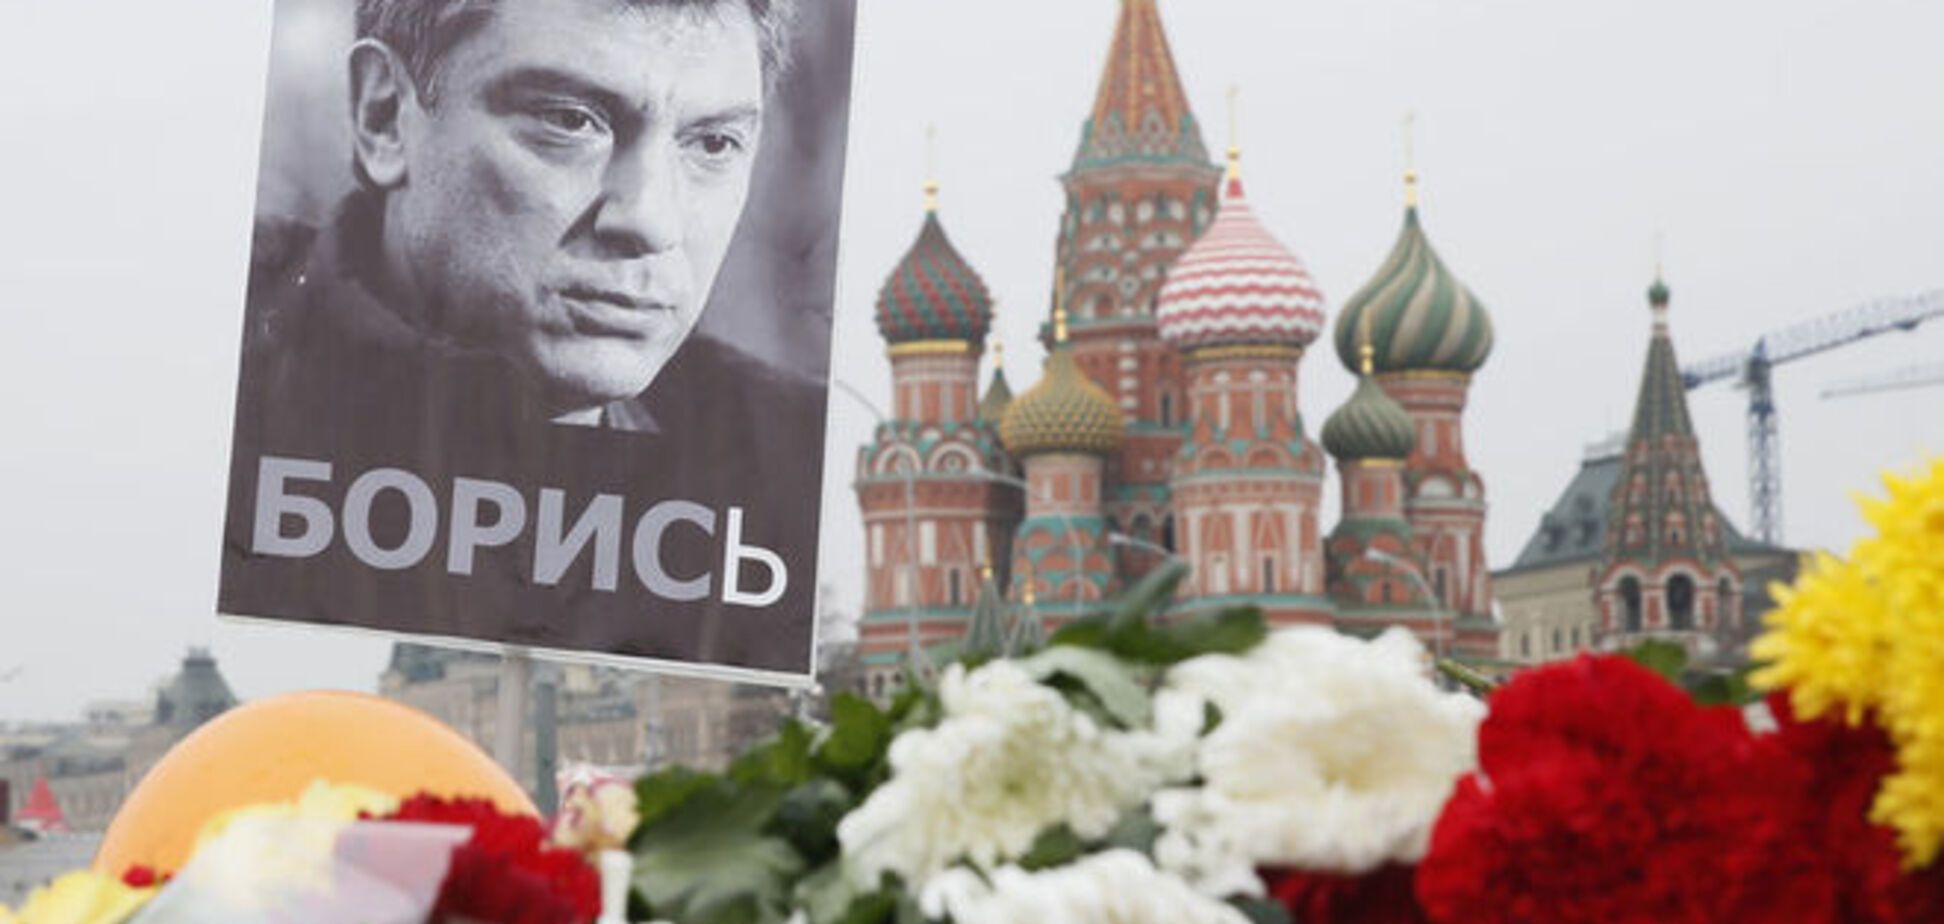 ЗМІ: у справі Нємцова з'явився 'високопоставлений представник Чечні'